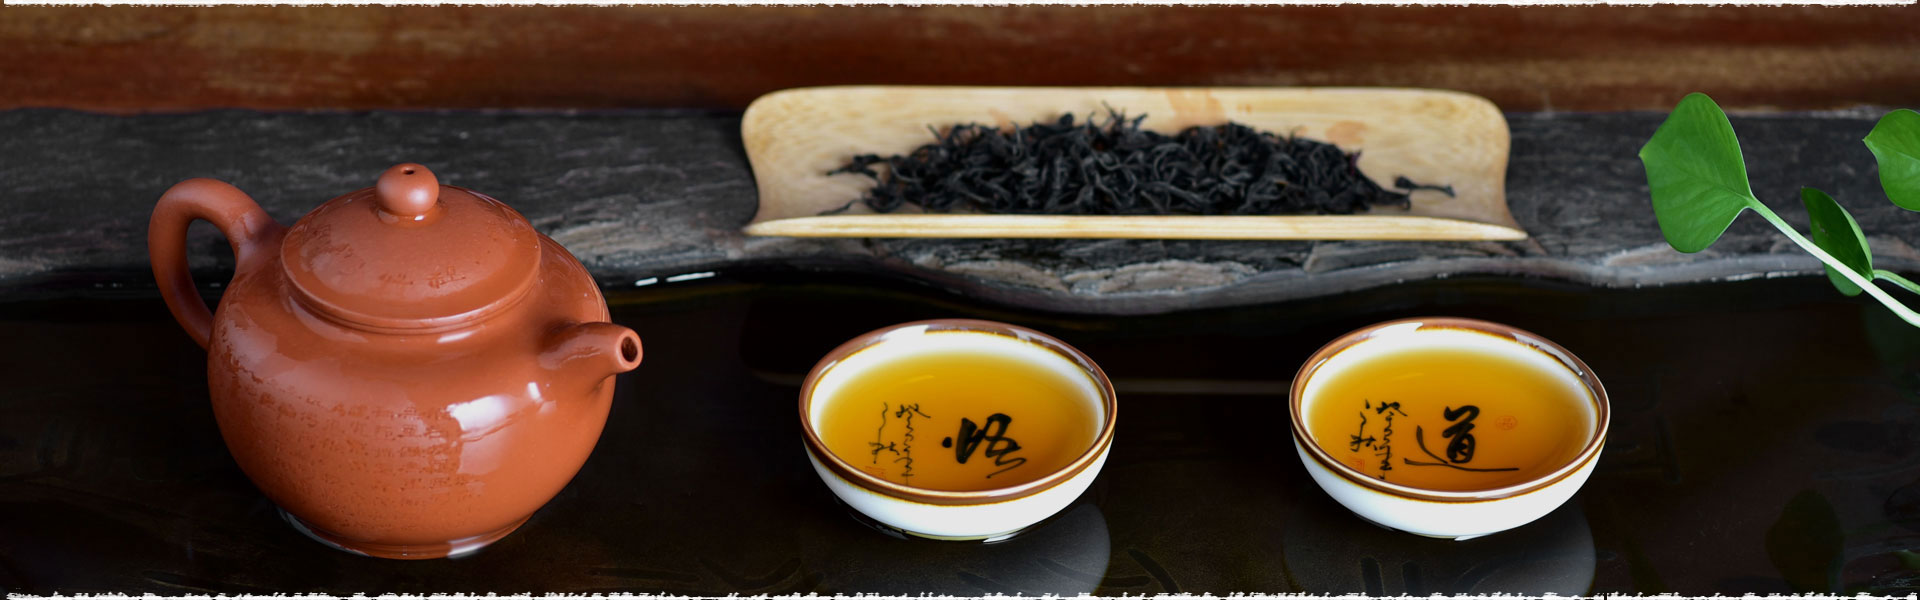 La fabrication du thé noir de Chine.